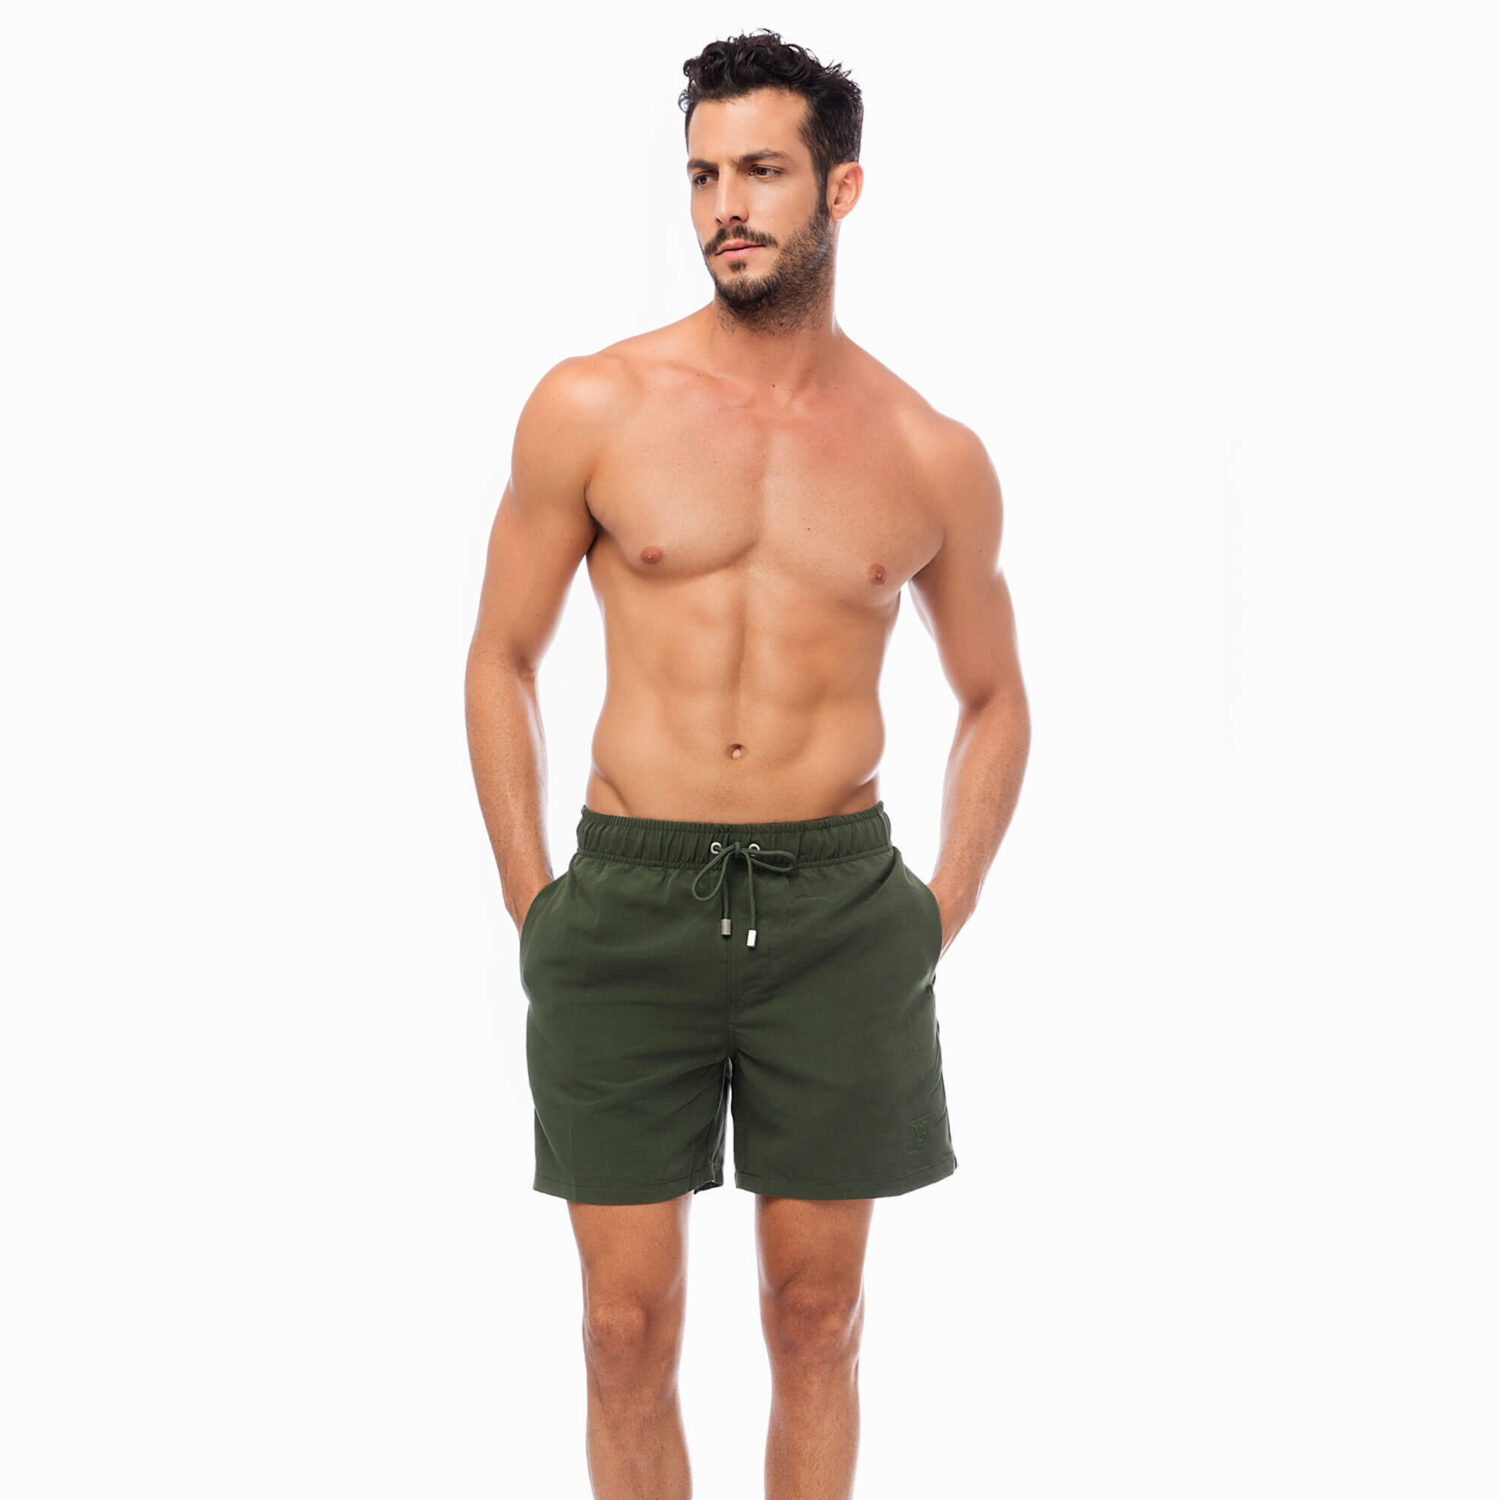 Мъжки бански шорти бързосъхнещи с uv защита Mengear | Minerva | Цвят: маслено зелен